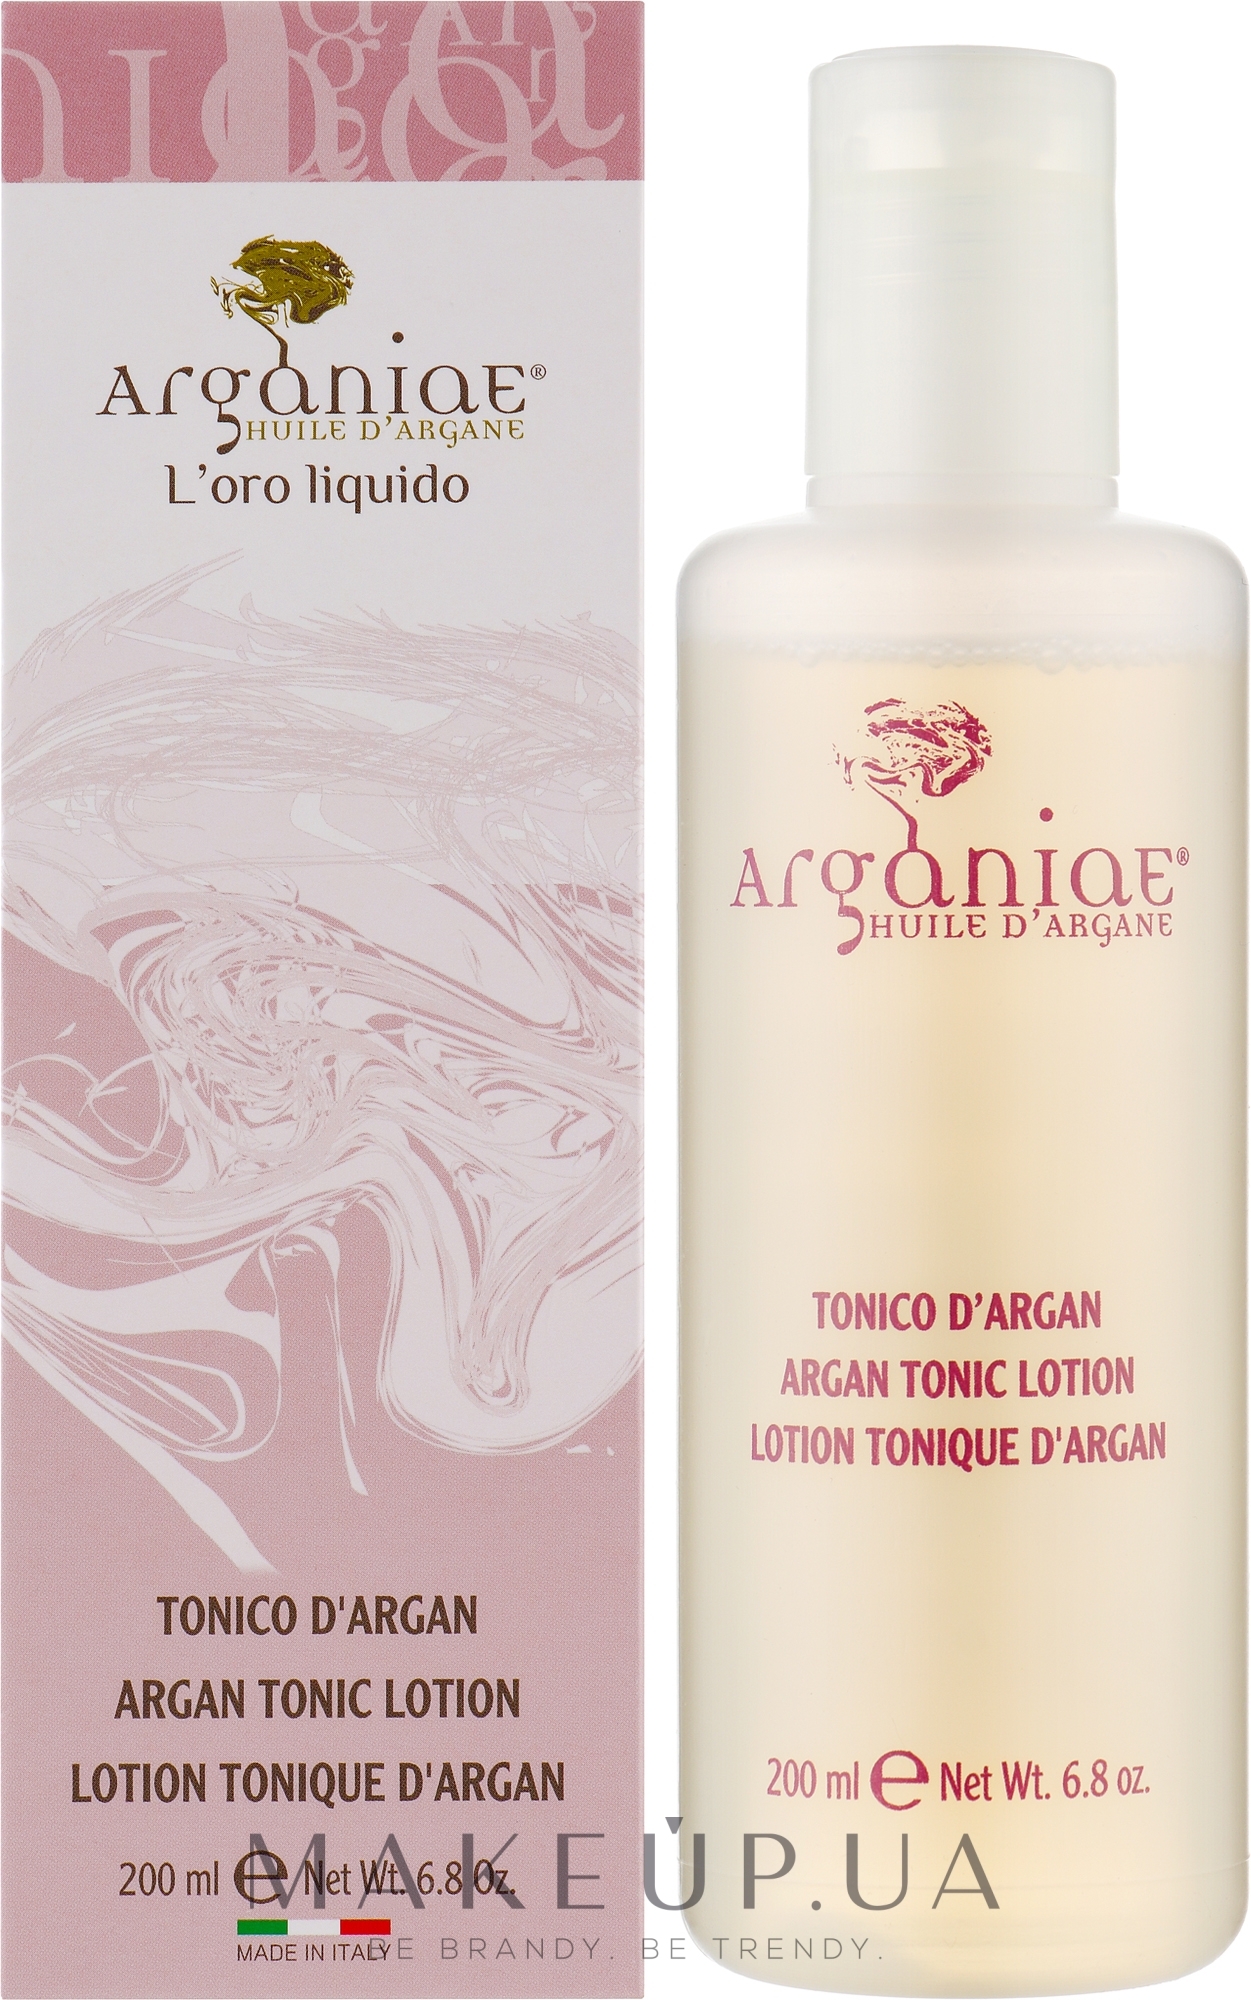 Тонизирующий лосьон для лица с аргановым маслом - Arganiae L'oro Liquido Argan Tonic Lotion — фото 200ml